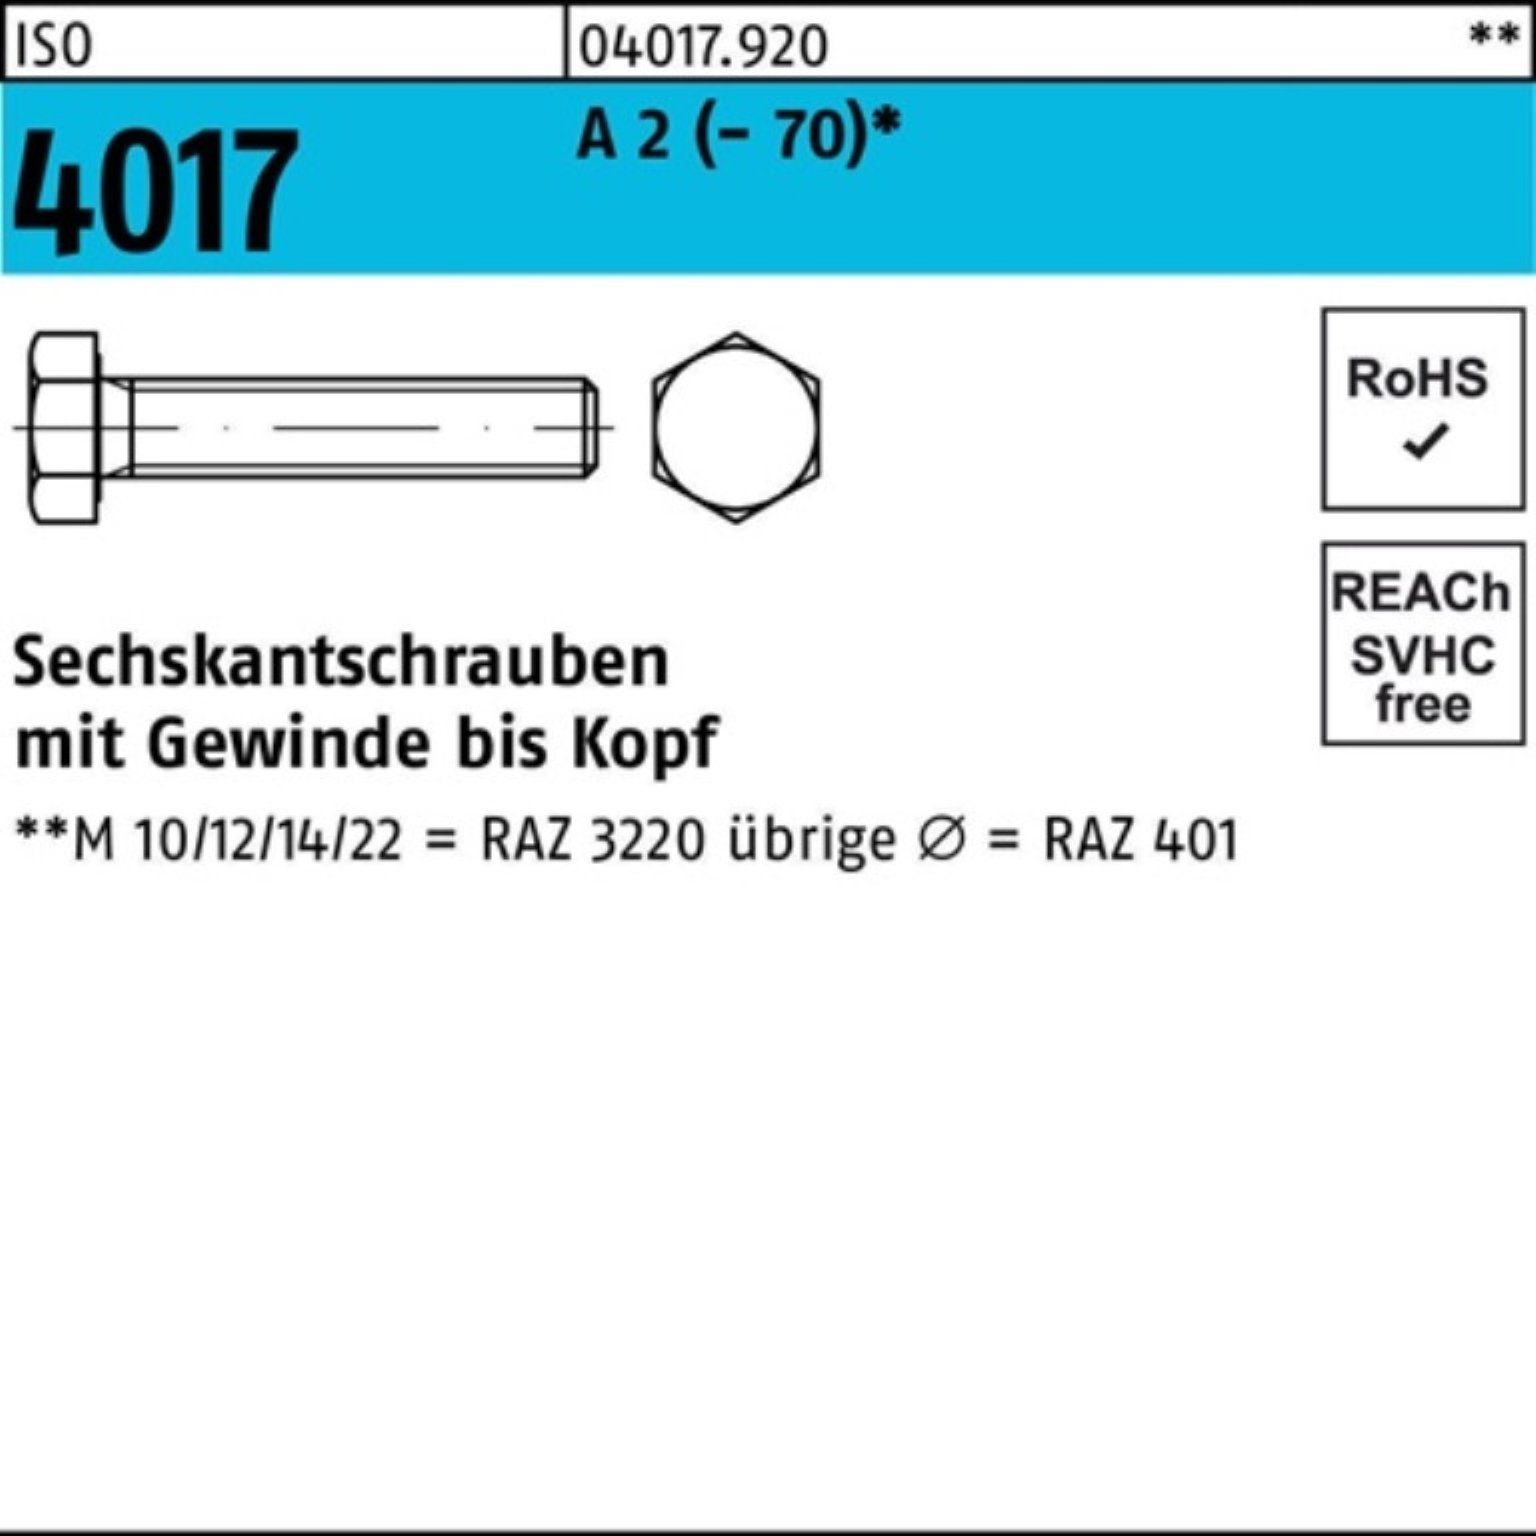 Bufab Sechskantschraube 100er Pack Sechskantschraube ISO 4017 VG M10x 16 A 2 (70) 100 Stück